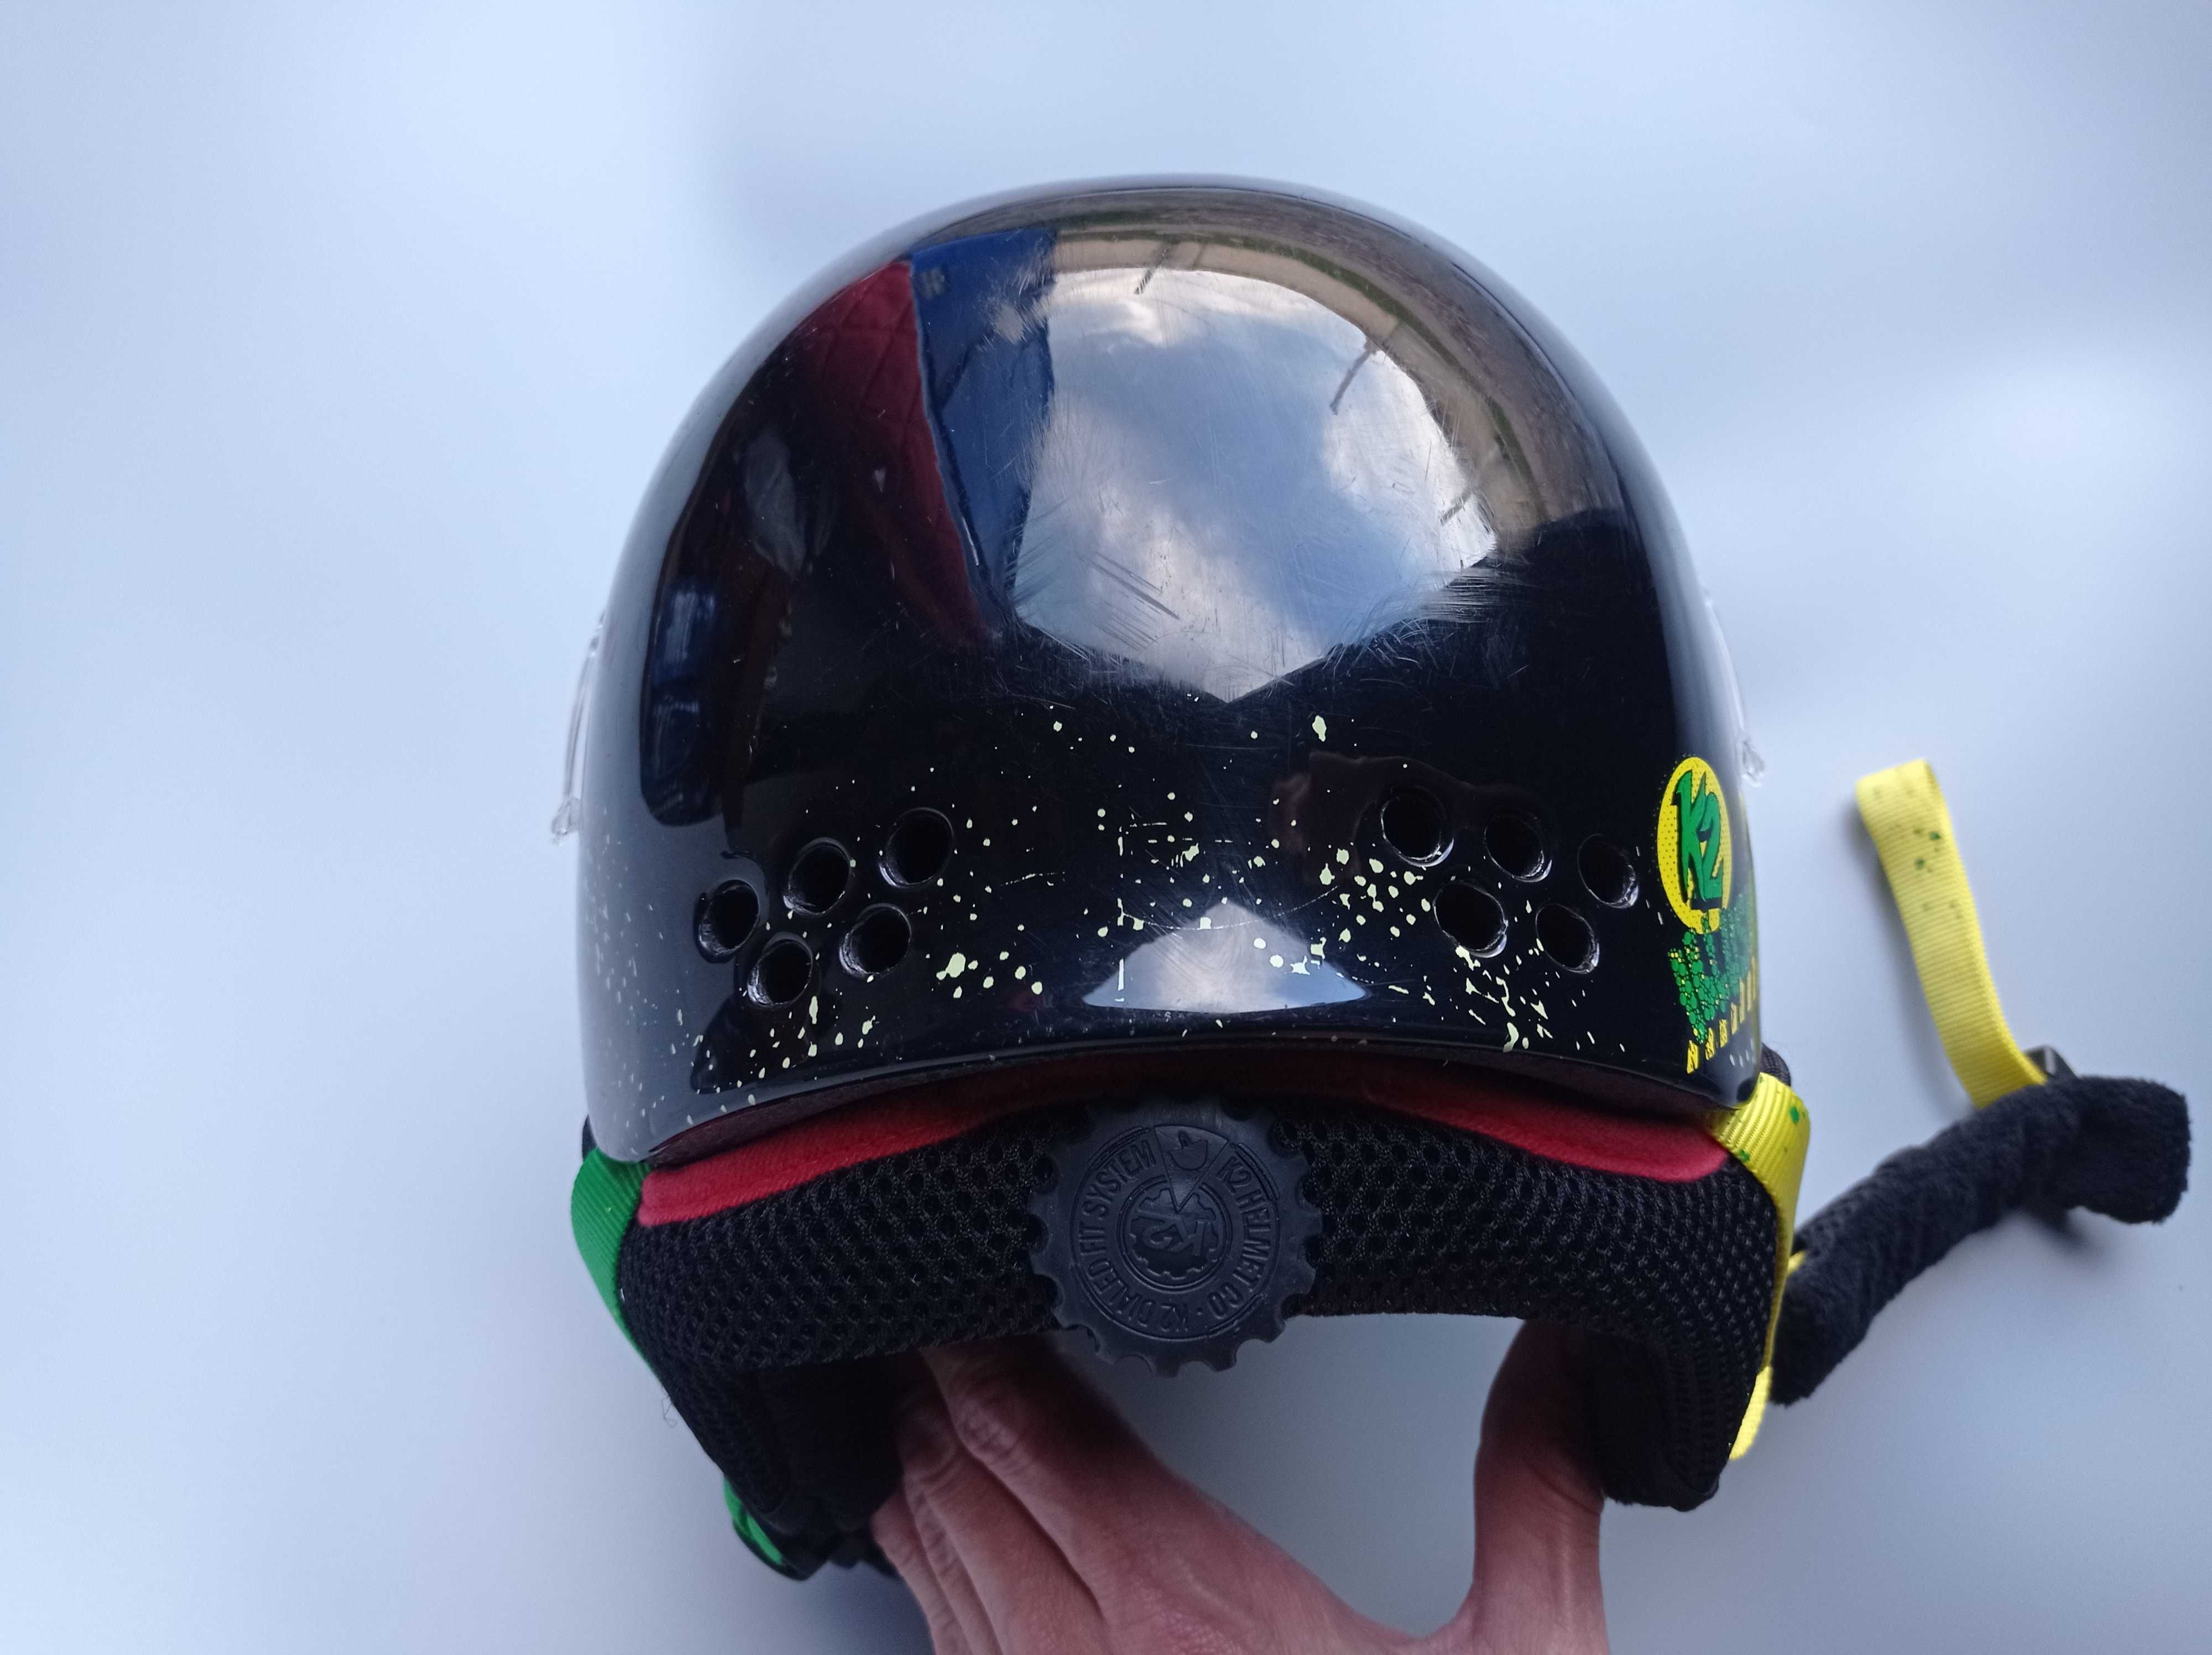 Горнолыжный детский шлем K2 ILLUSION, размер 48-51см, Германия.